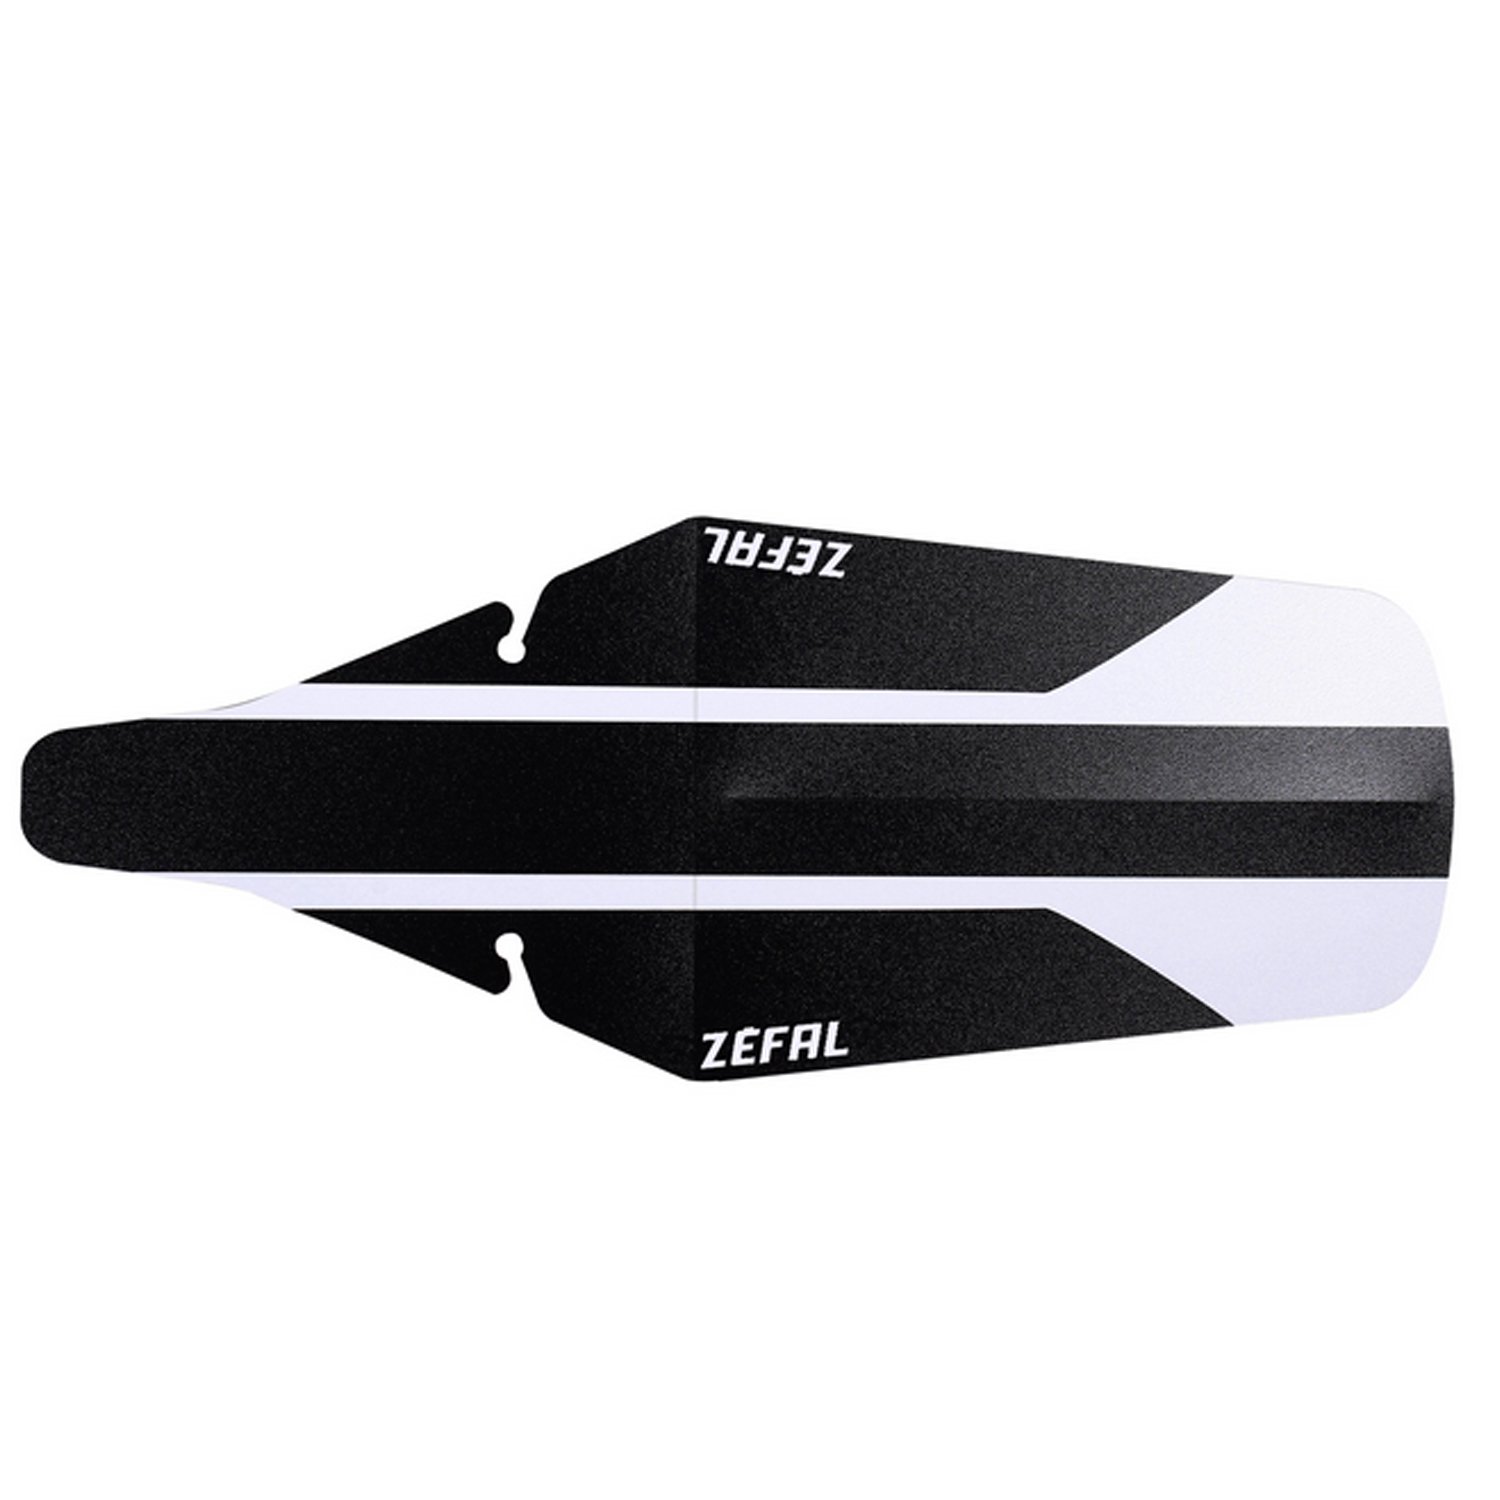 Крыло велосипедное Zefal Shield Lite Xl Rear Mudguard, заднее, черный/белый, 2561А крыло tacx mudguard mtb t7050